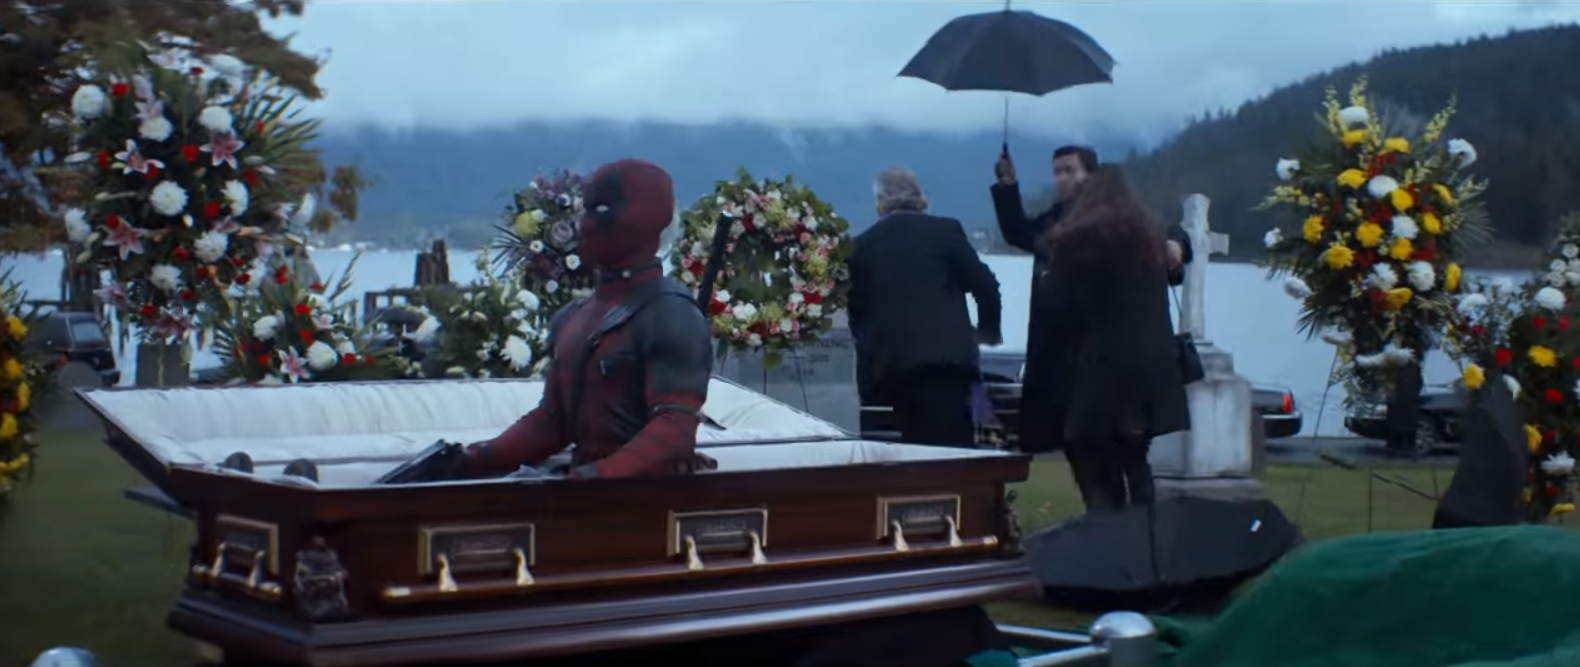 Deadpool tiếp tục phá phách khi đến đám ma nhà người ta cũng không tha